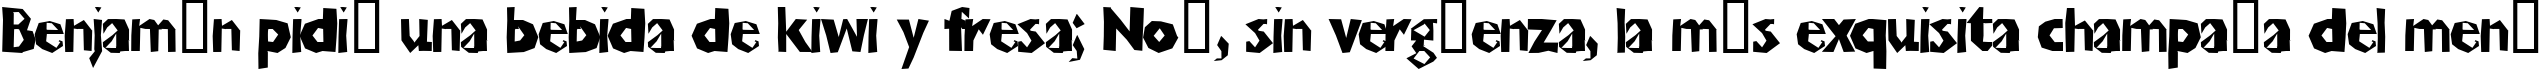 Пример написания шрифтом ChunkoBlockoThinner текста на испанском